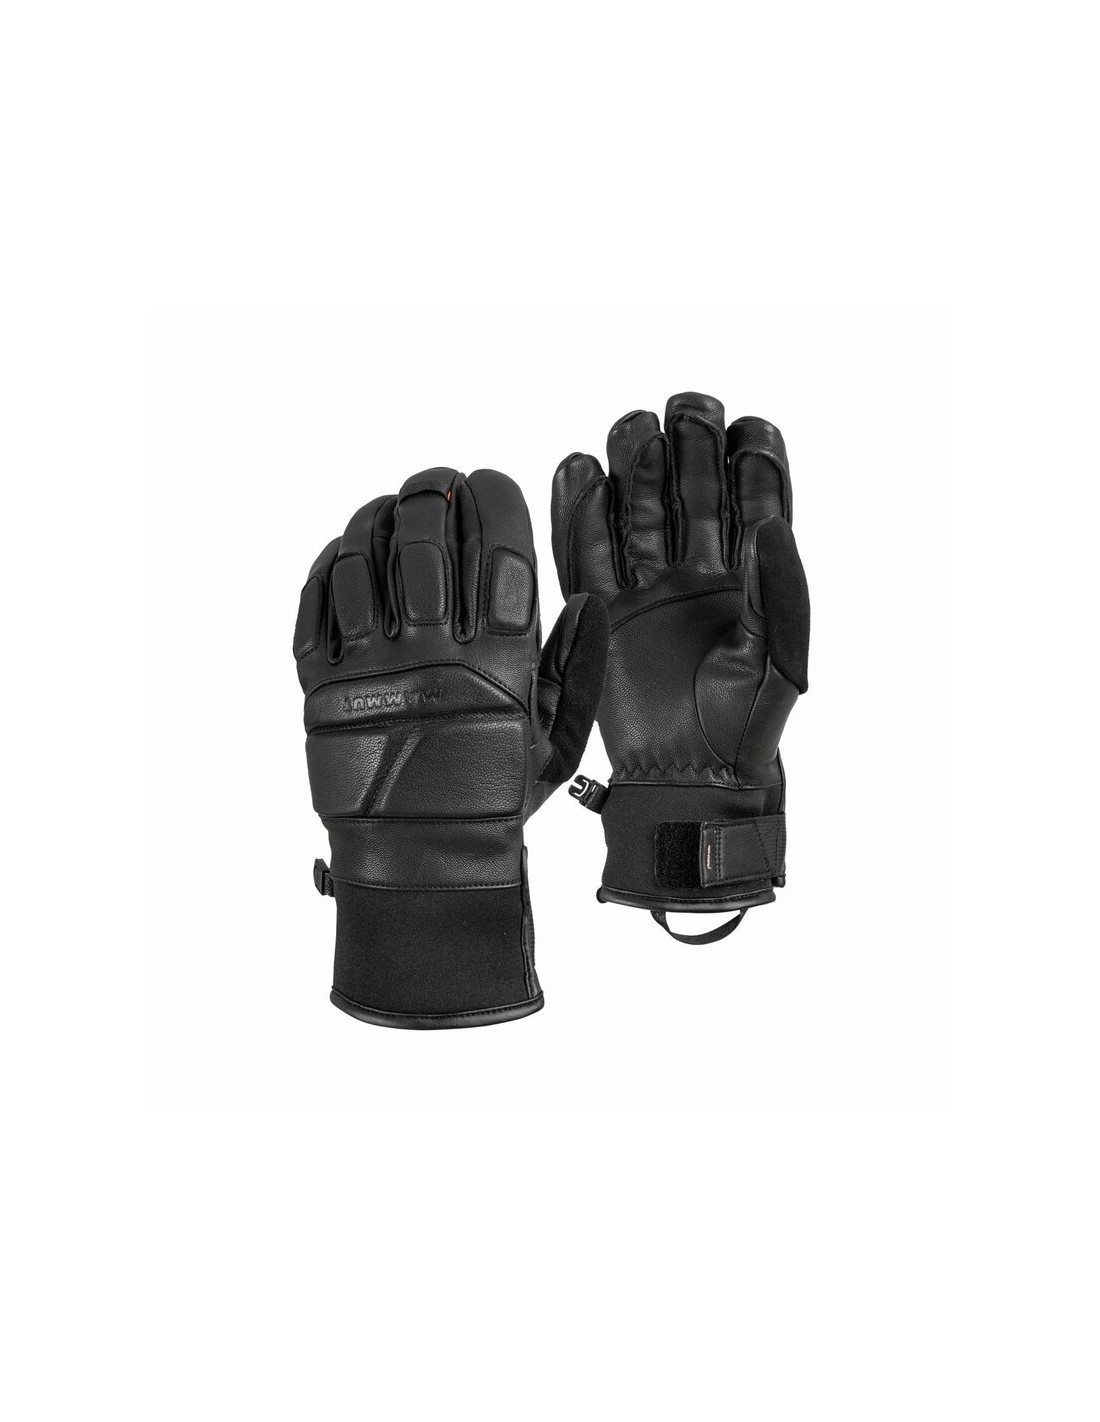 Mammut Handschuh La Lista Glove Handschuhvariante - Handschuhe, Handschuhgröße - 7, Handschuhfarbe - Black, von Mammut